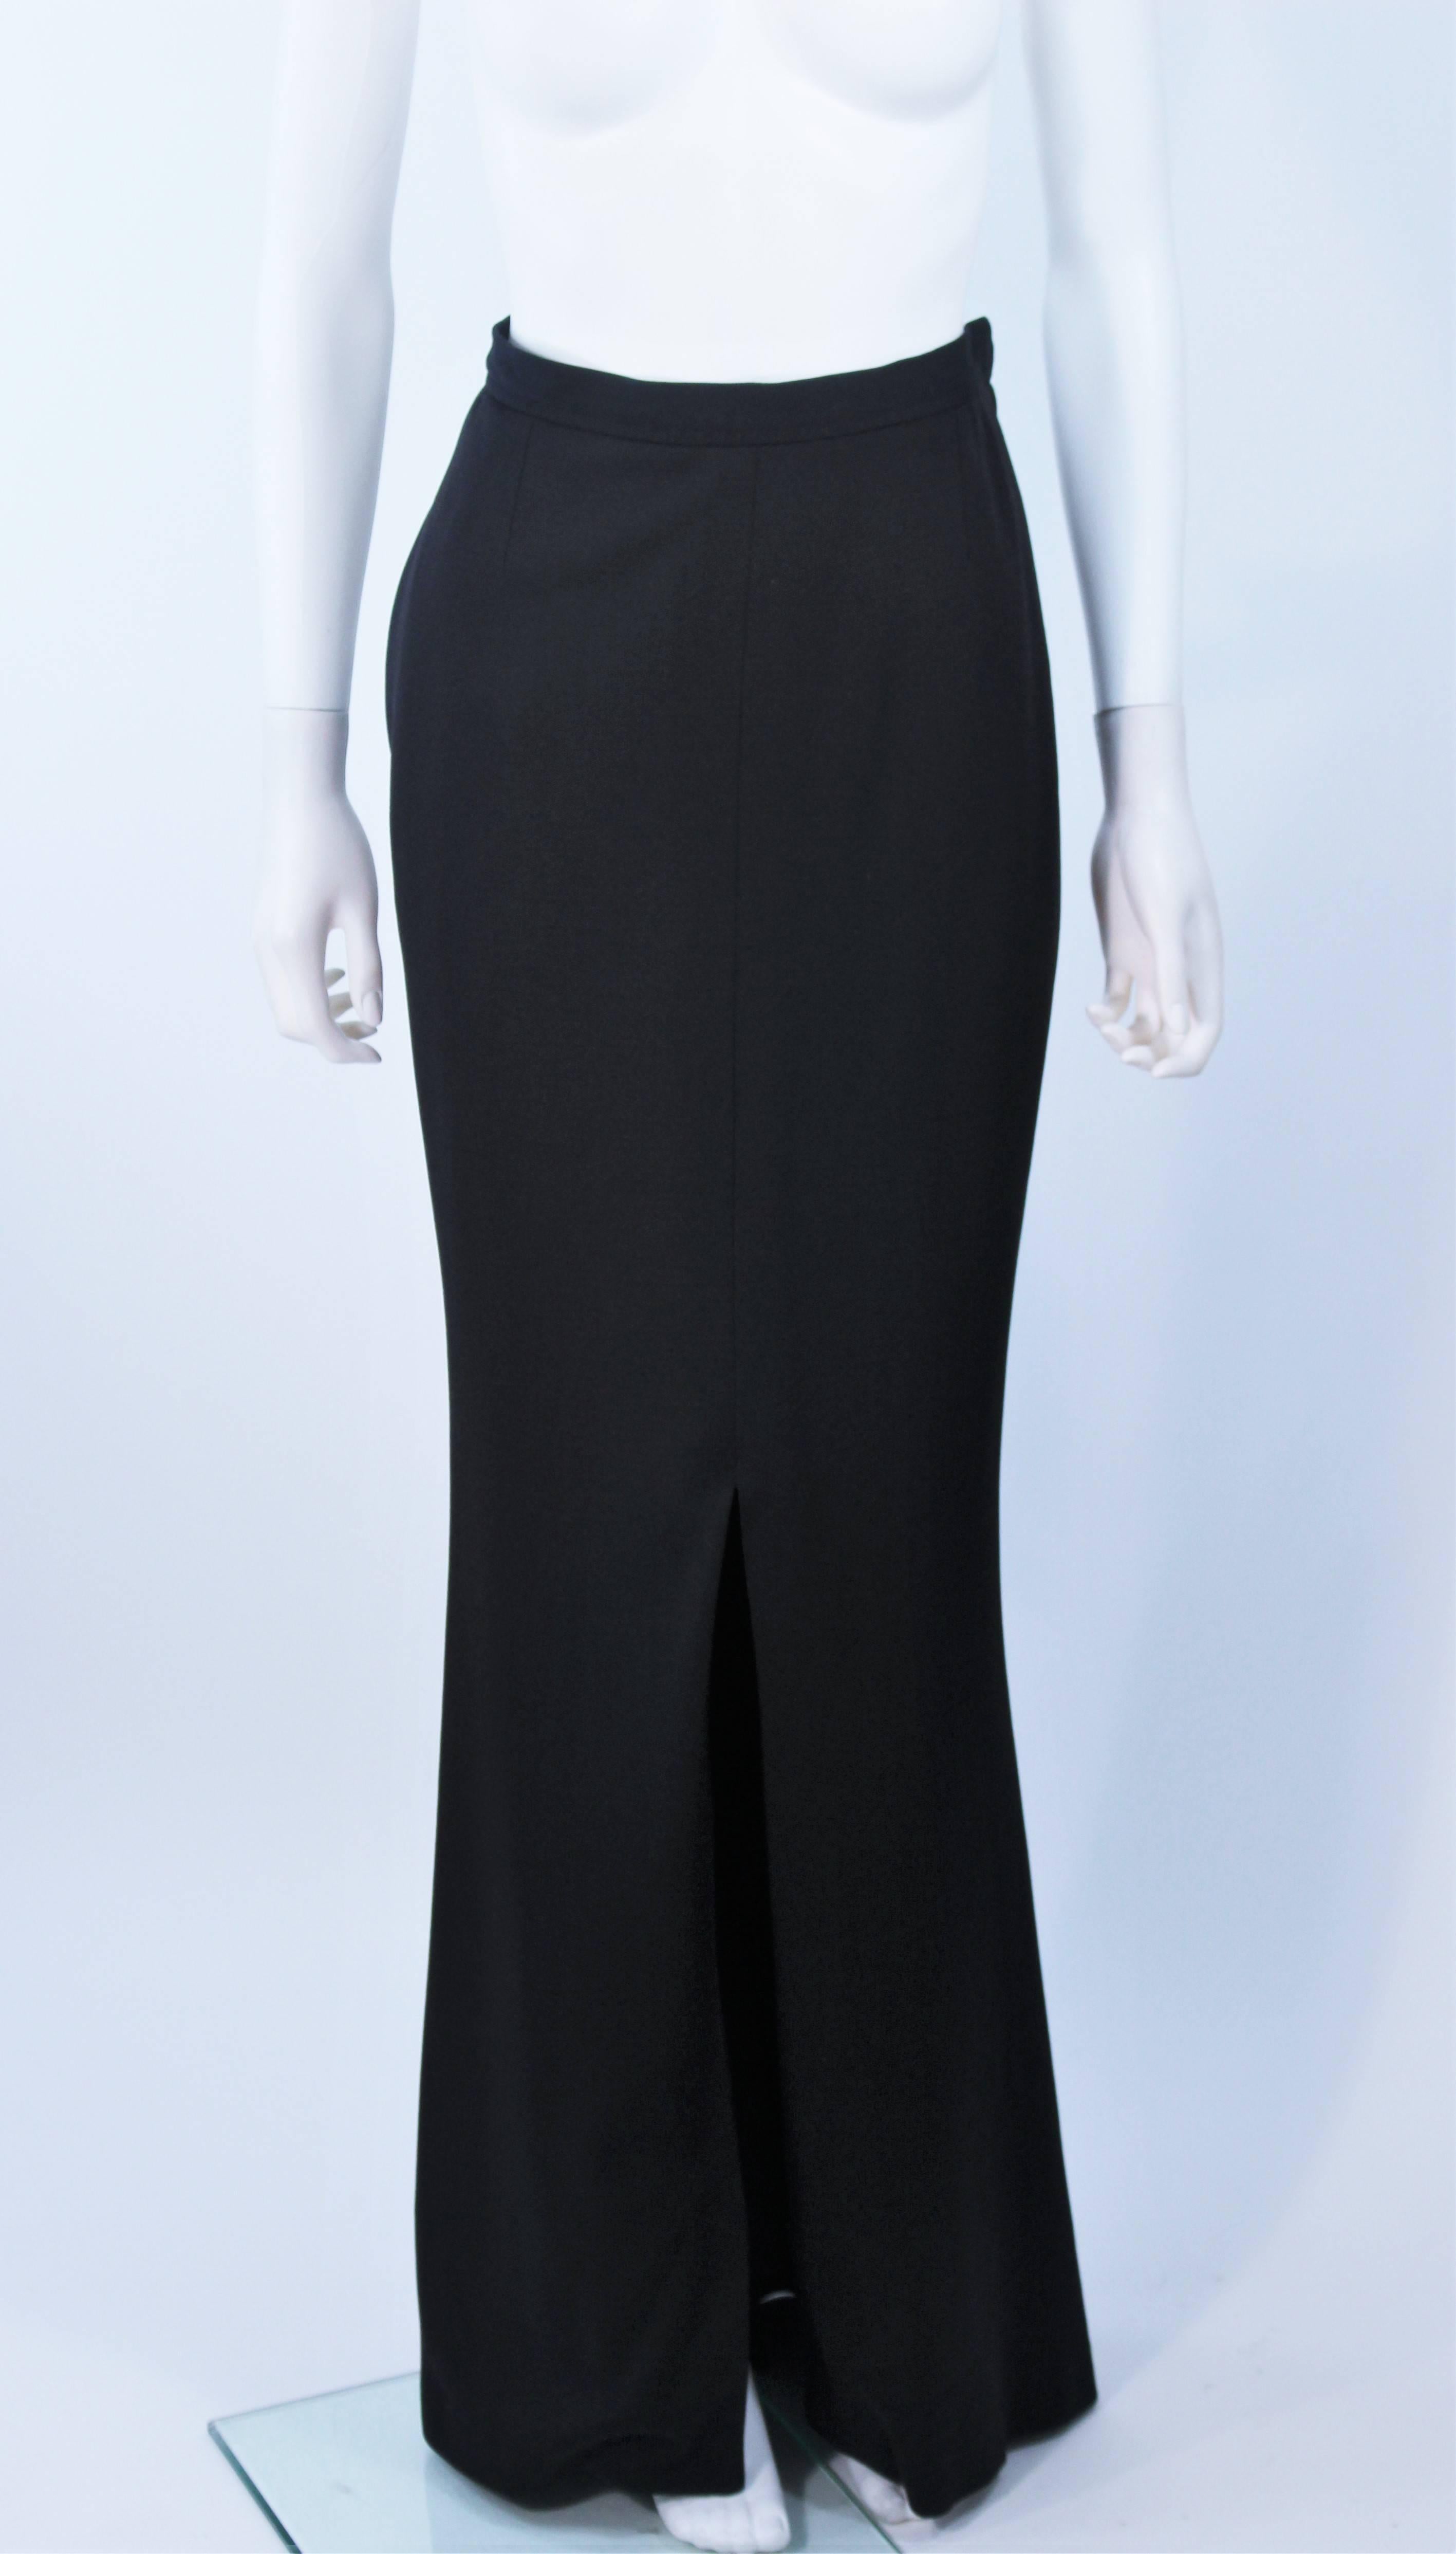 Women's YVES SAINT LAURENT Black Full Length Mermaid Flare Skirt with Slit Size 2-4